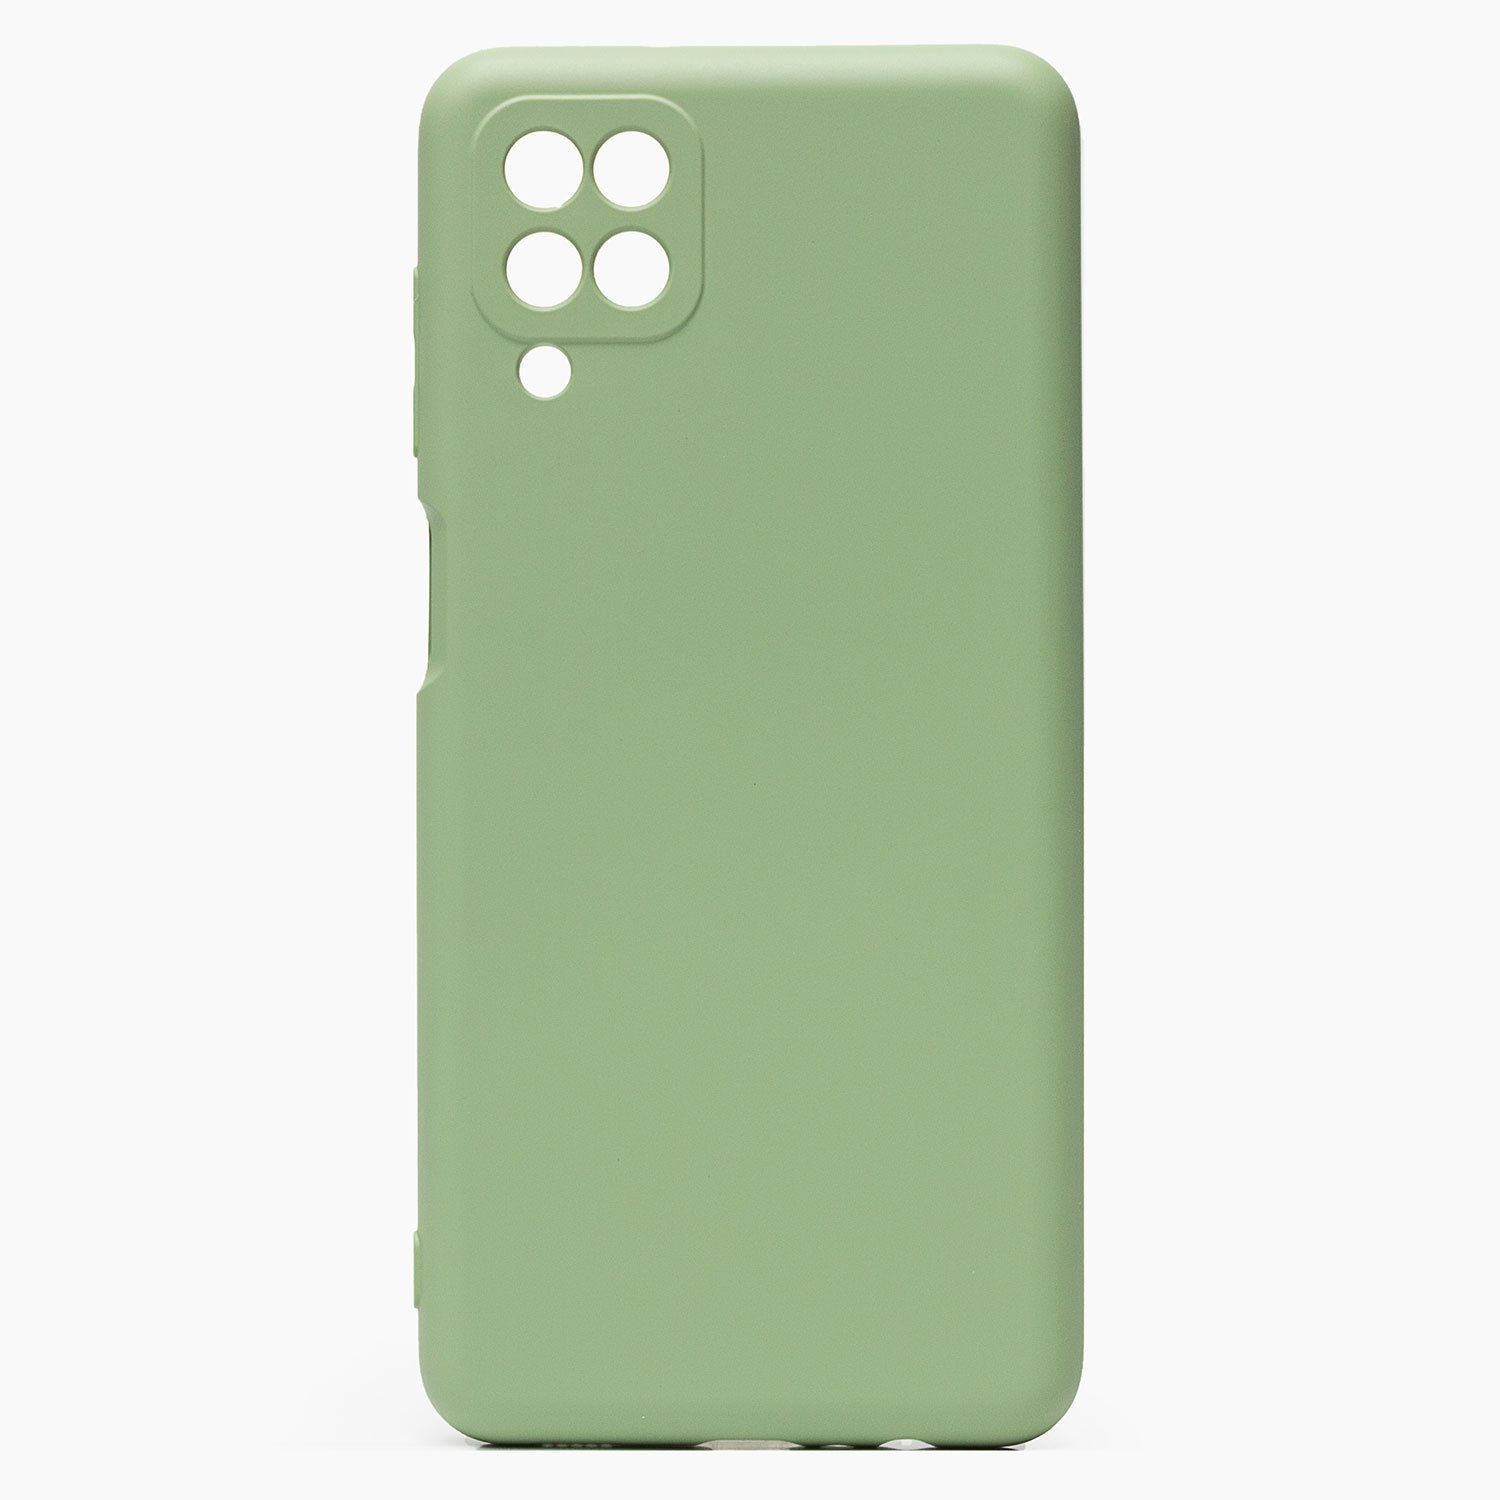 Чехол-накладка Activ Full Original Design для смартфона Samsung SM-A125 Galaxy A12, силикон, светло-зеленый